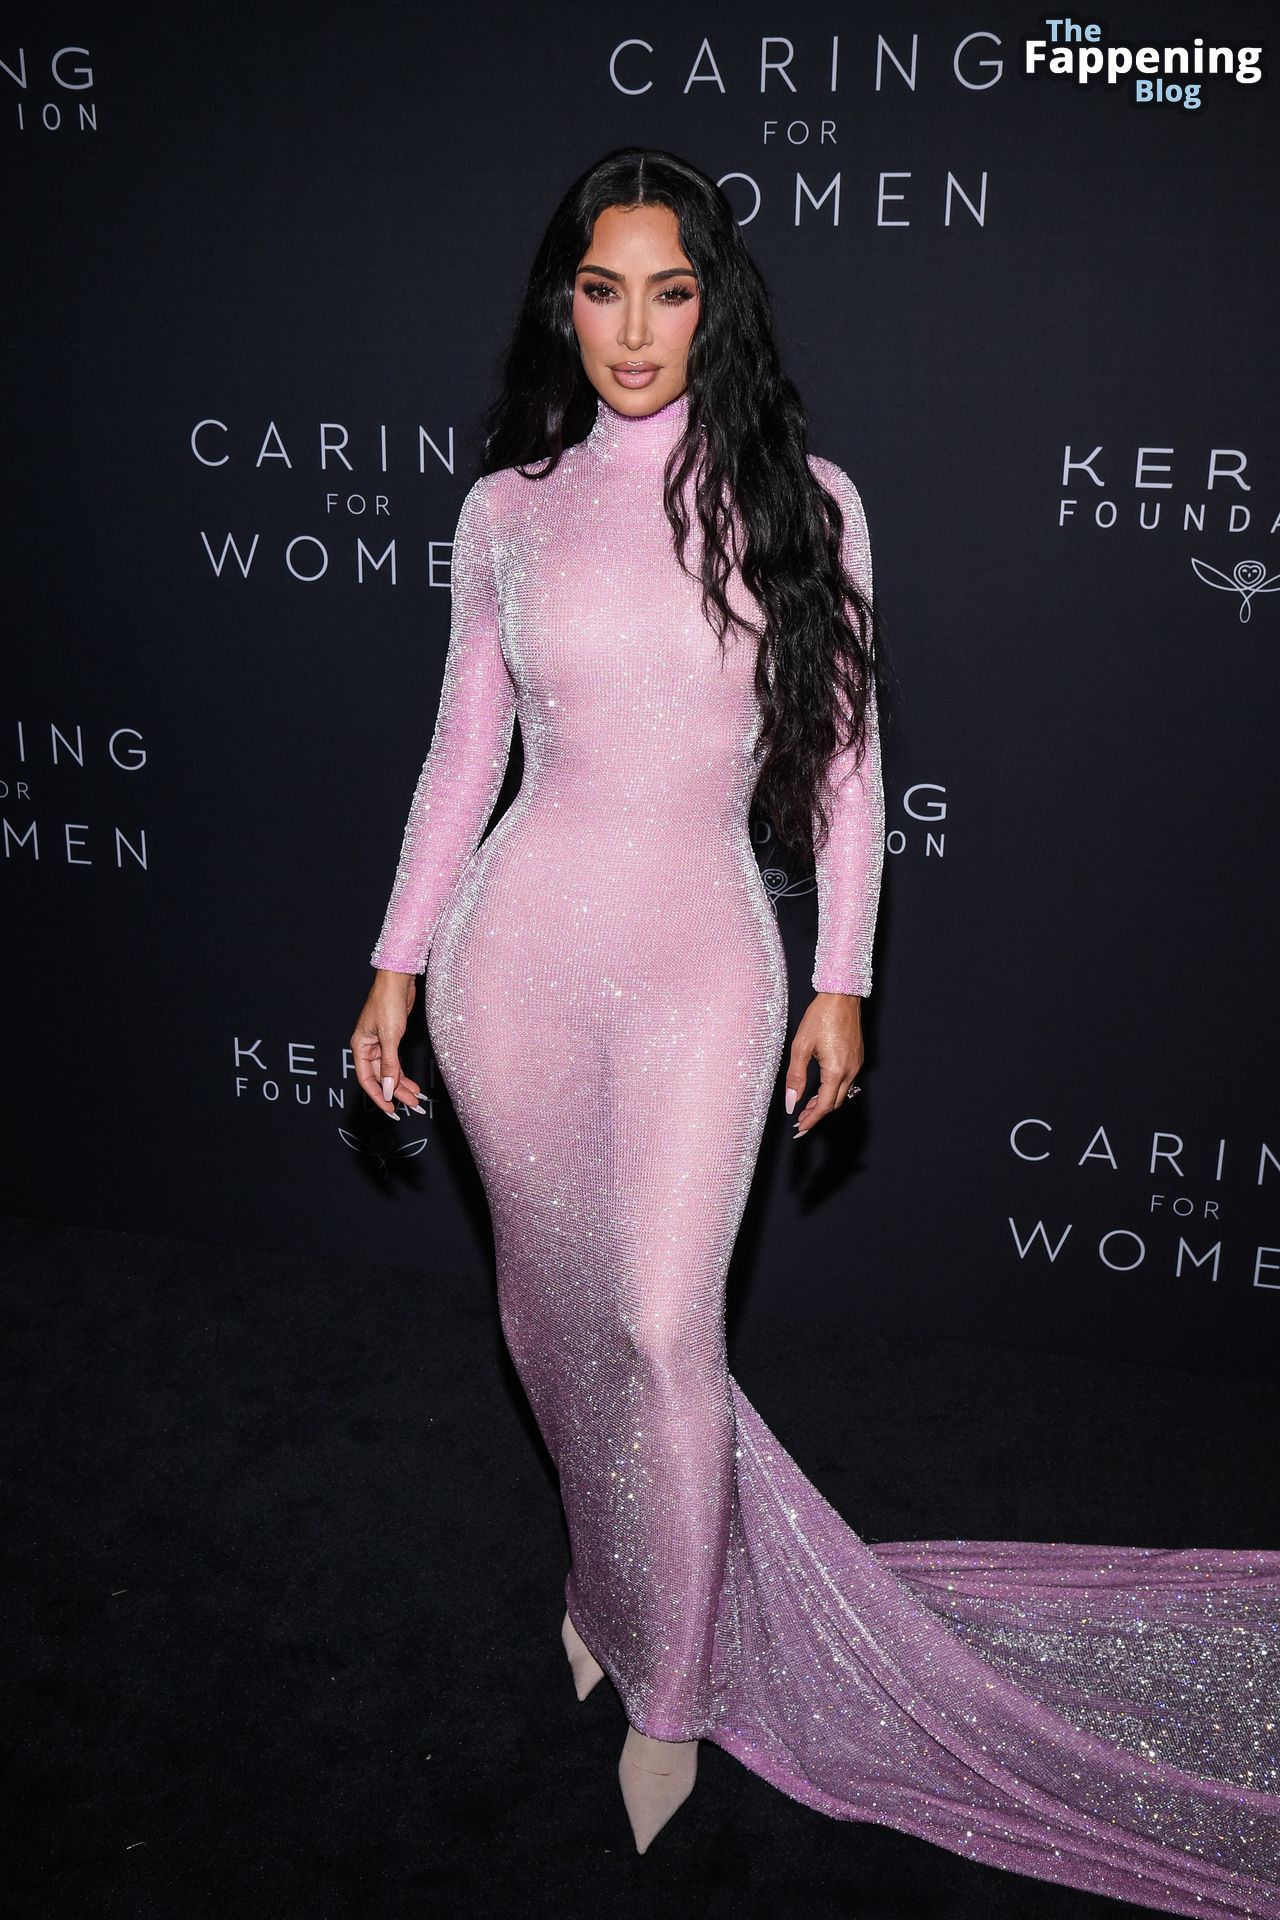 Kim-Kardashian-Sexy-95-The-Fappening-Blog.jpg